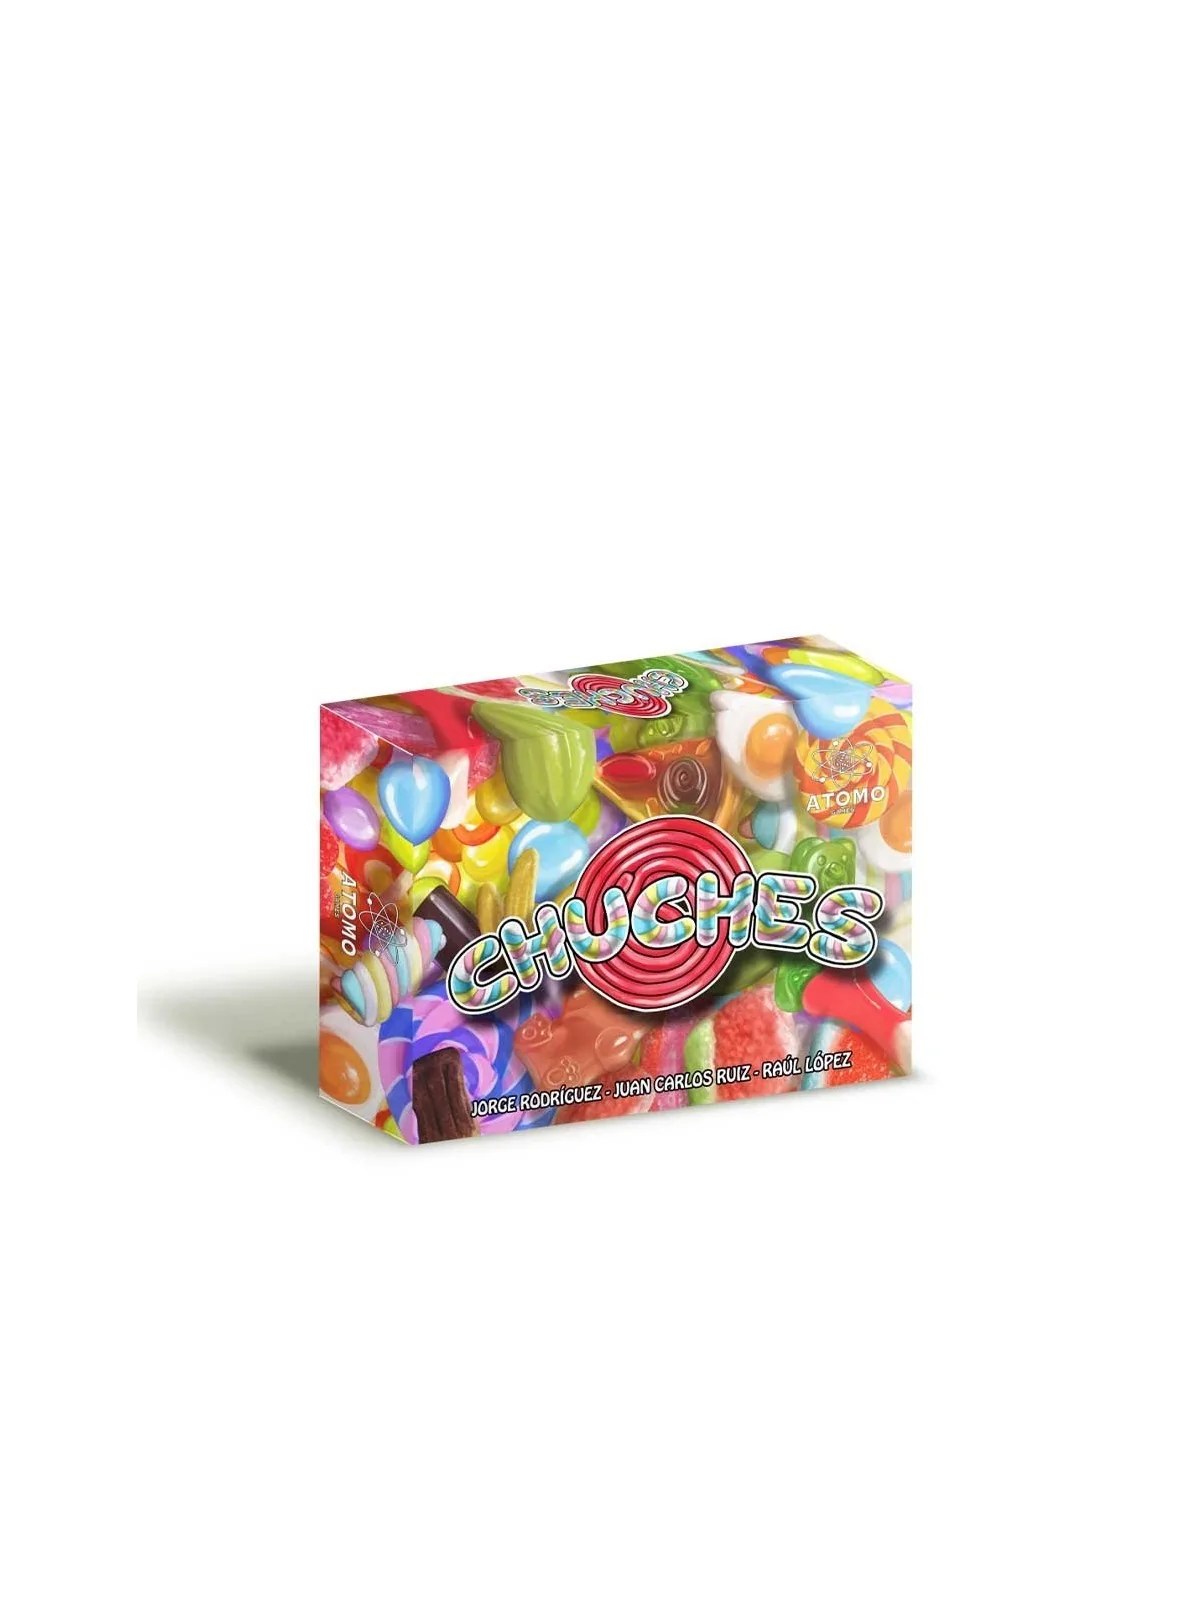 Comprar Chuches barato al mejor precio 12,95 € de Atomo Games